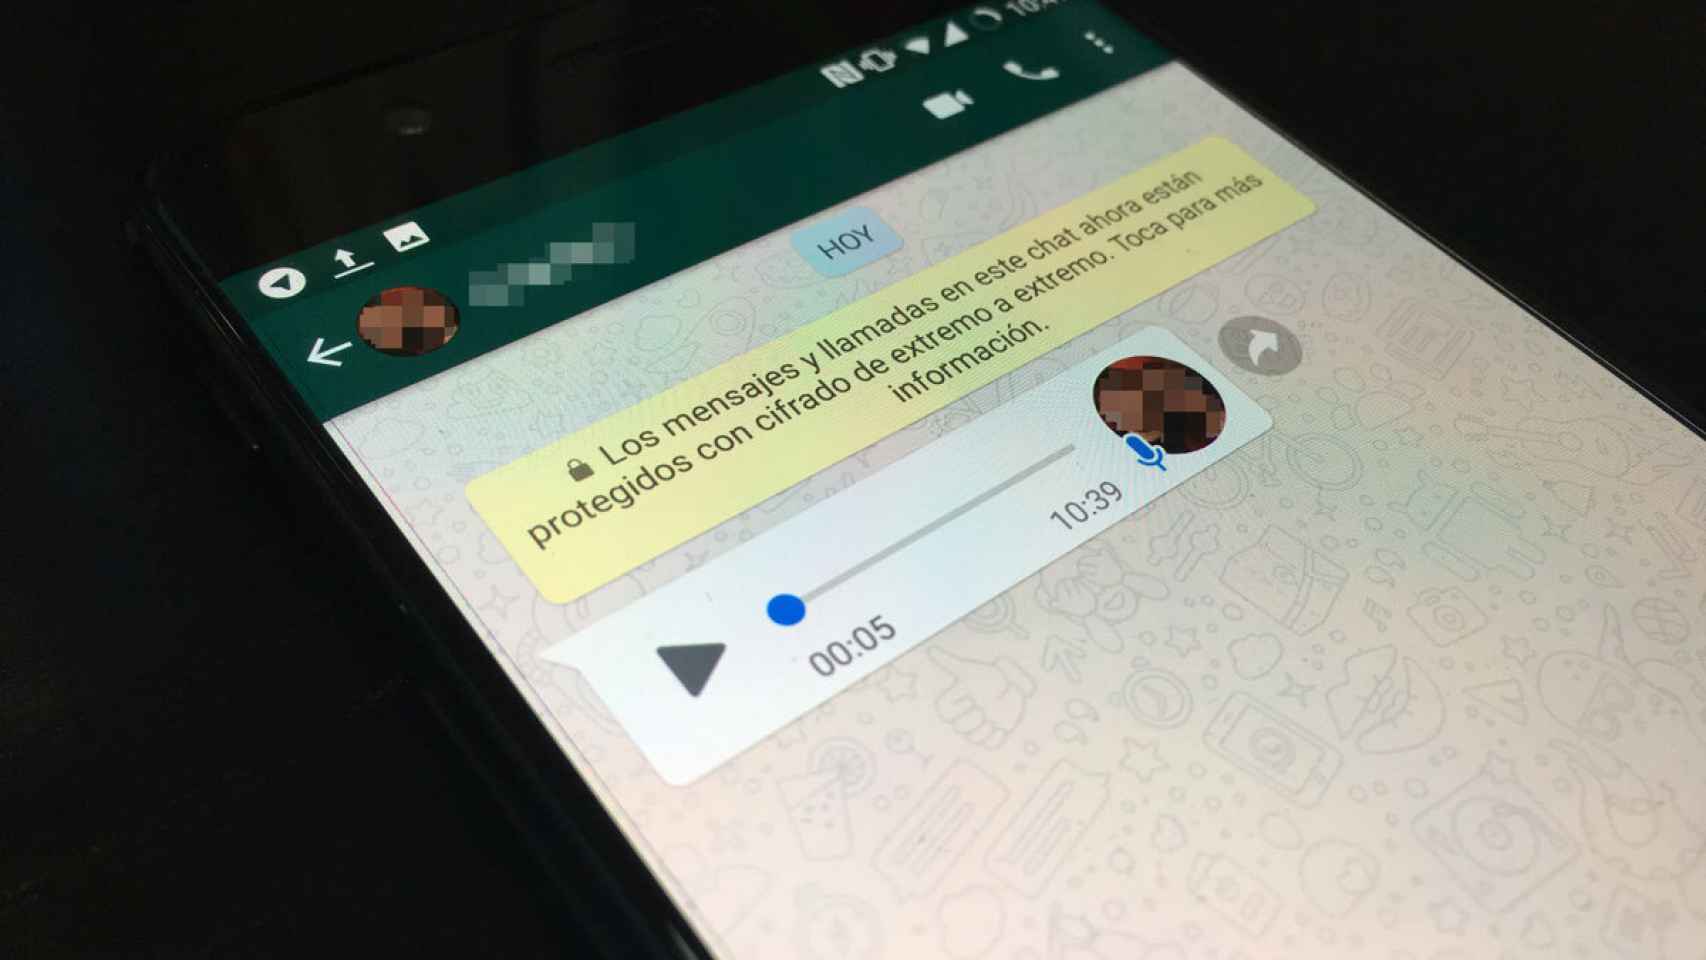 Di adiós a las notas de voz de WhatsApp: pásalas a texto con esta app